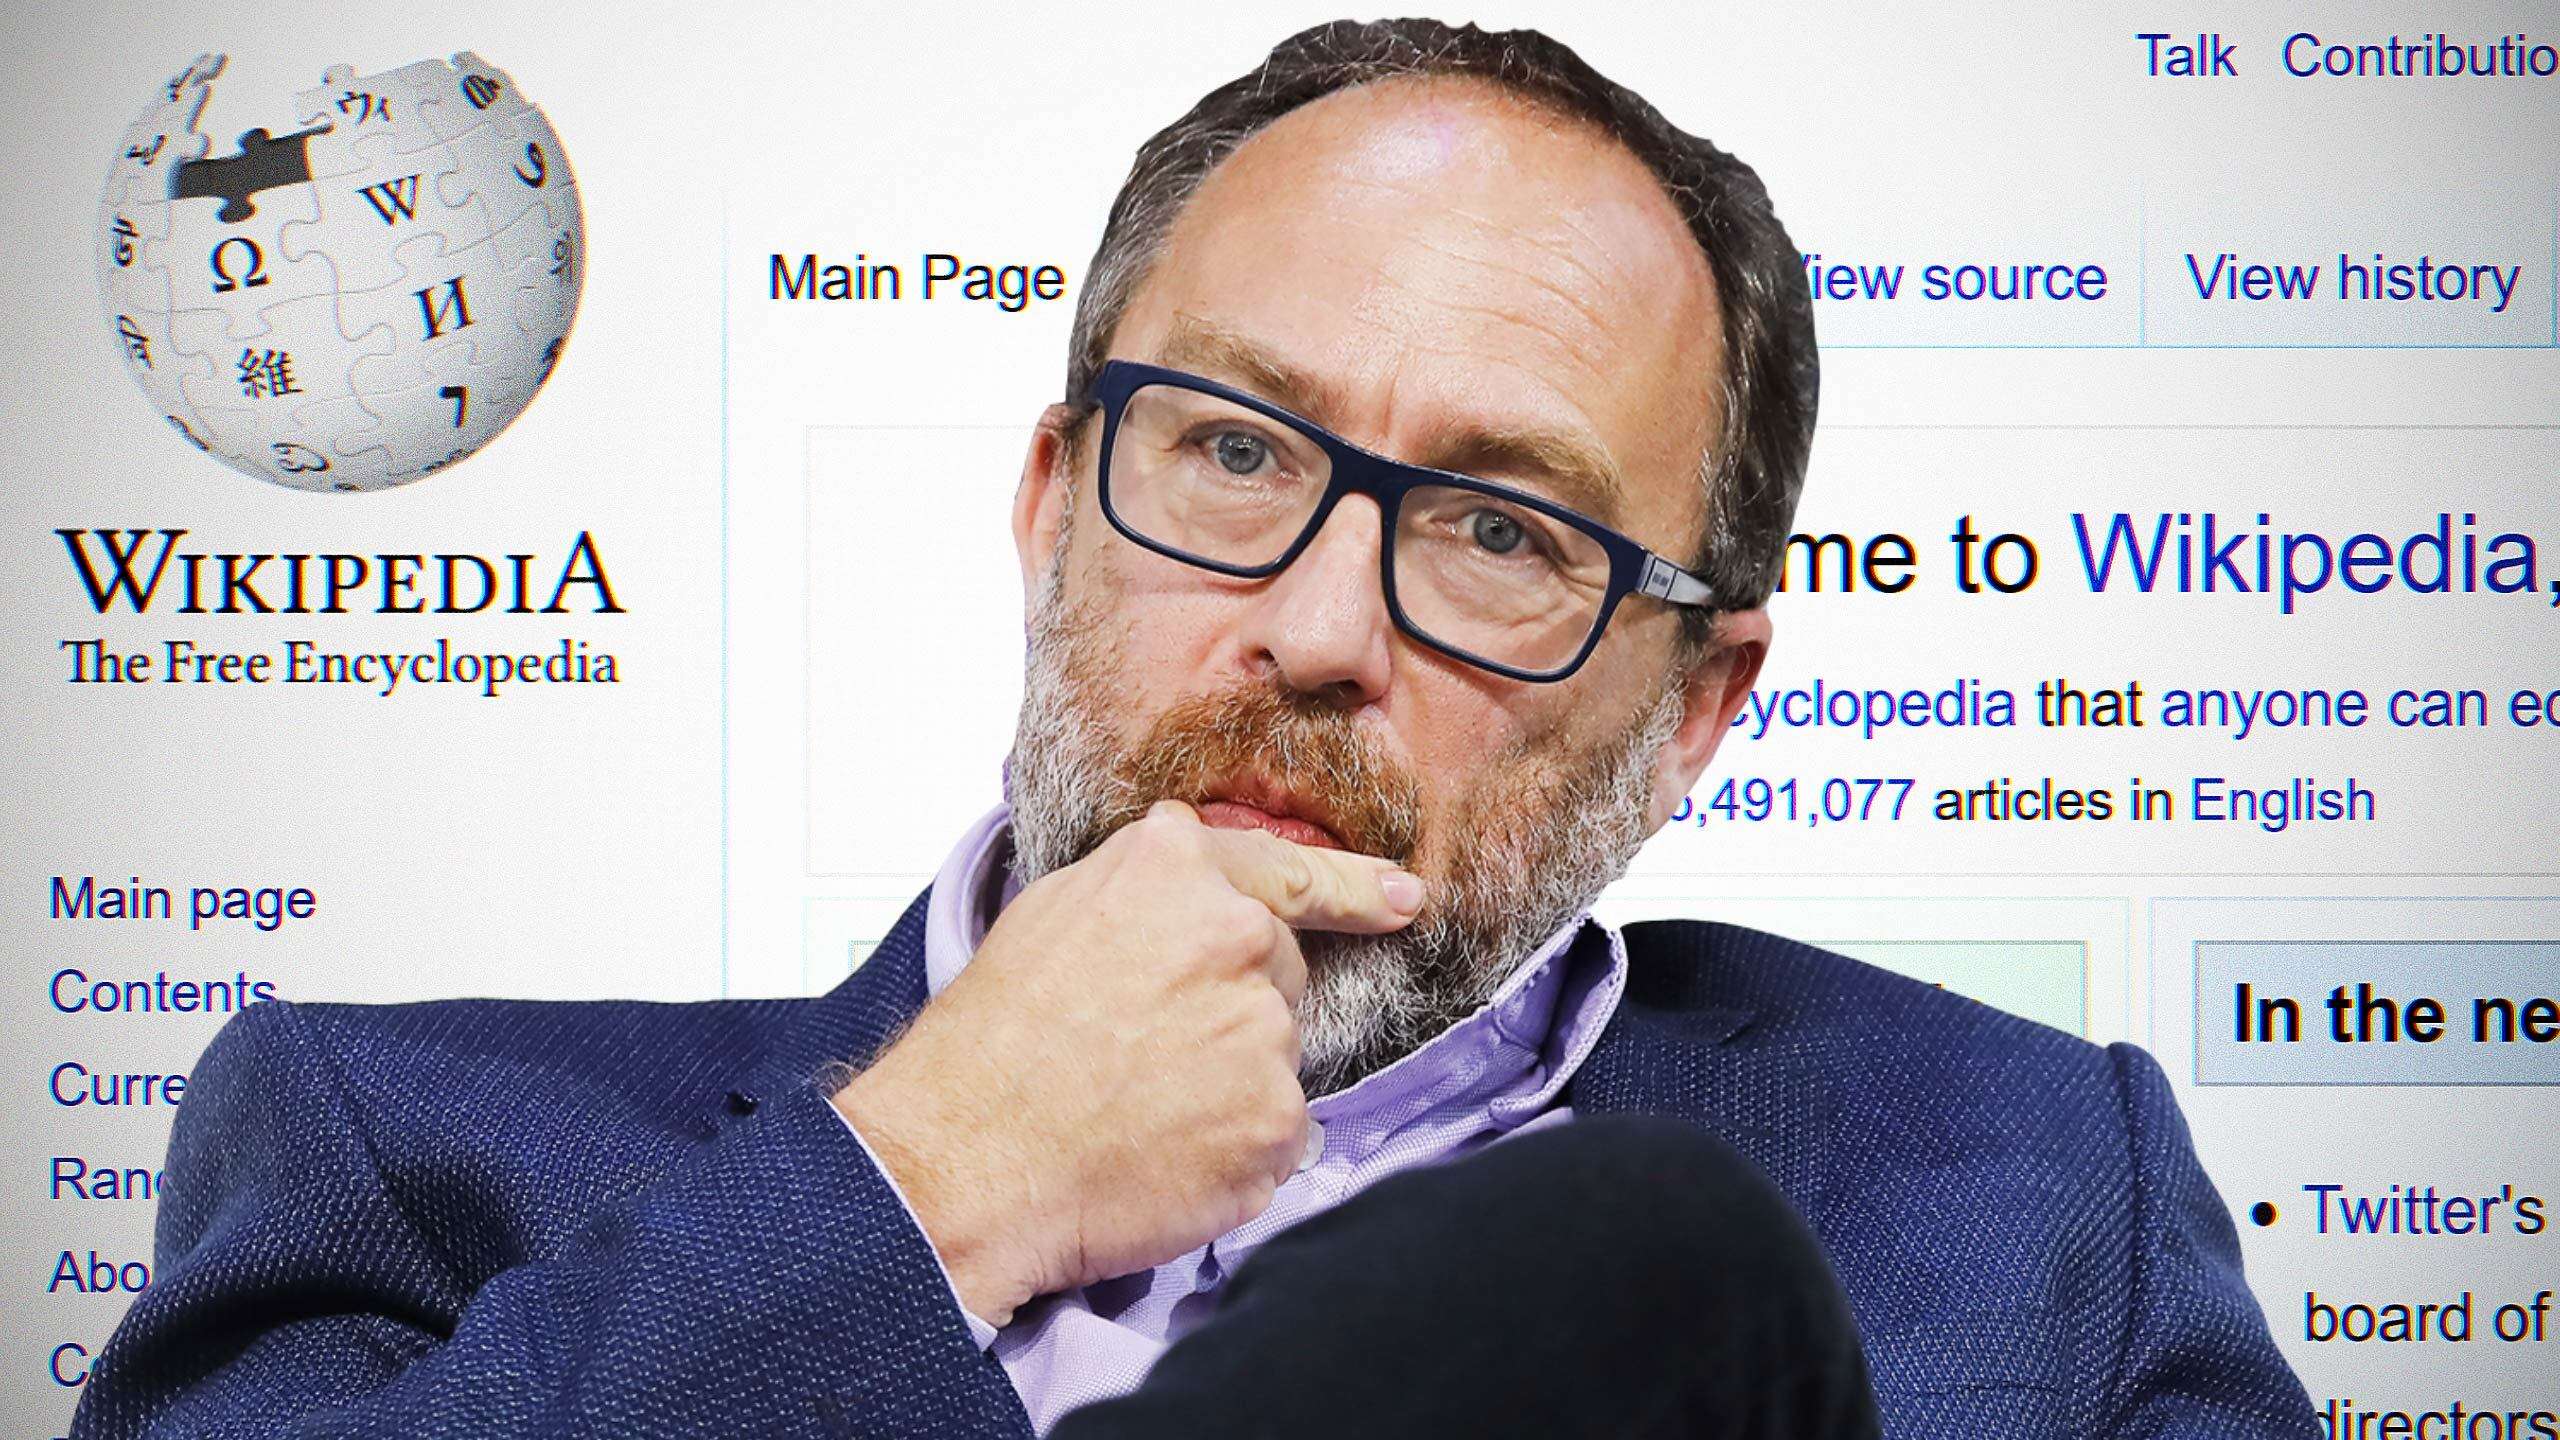 Jimmy Wales - Wikipedia